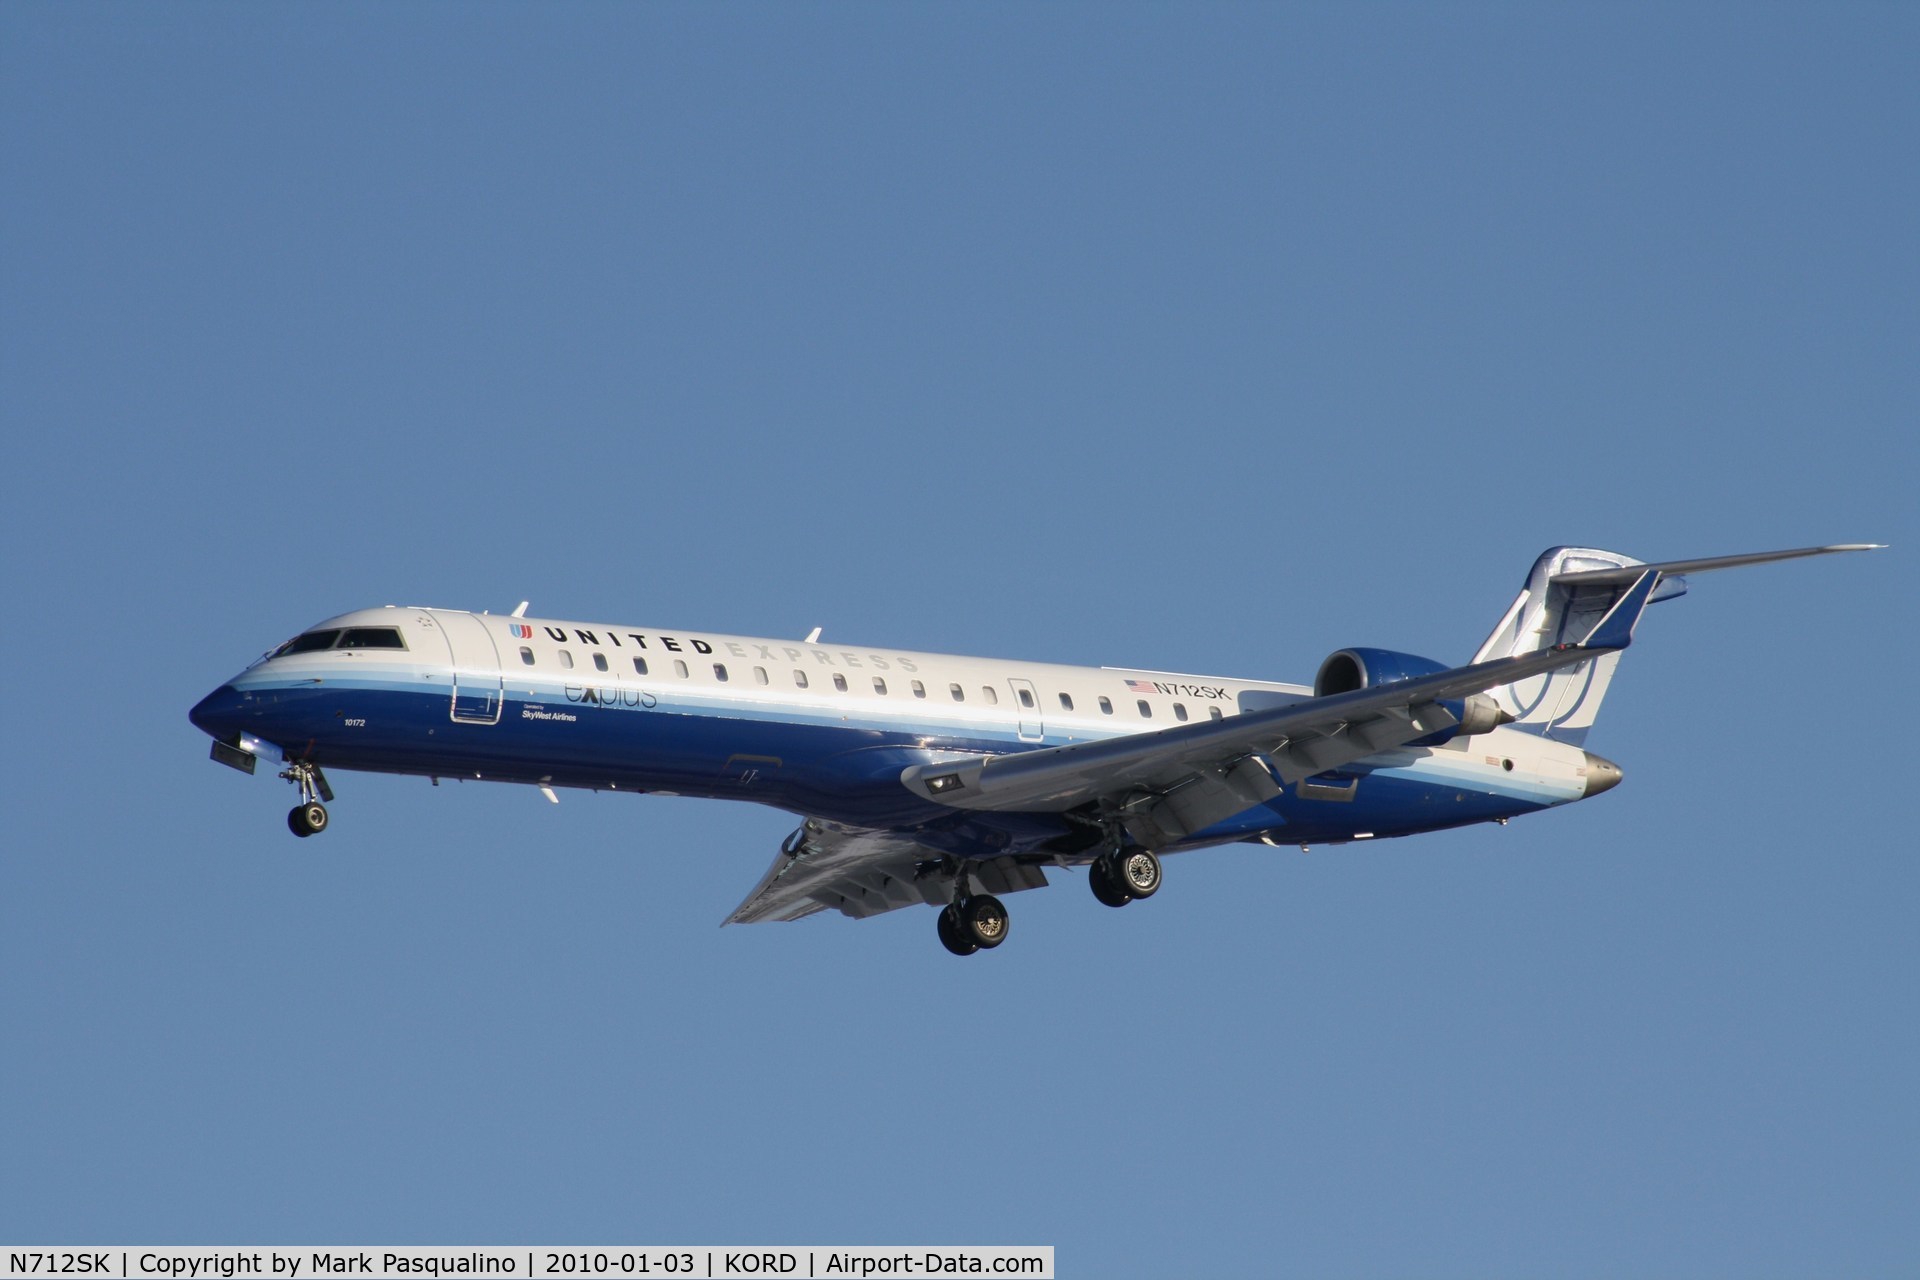 N712SK, 2004 Bombardier CRJ-700 (CL-600-2C10) Regional Jet C/N 10172, CL-600-2C10